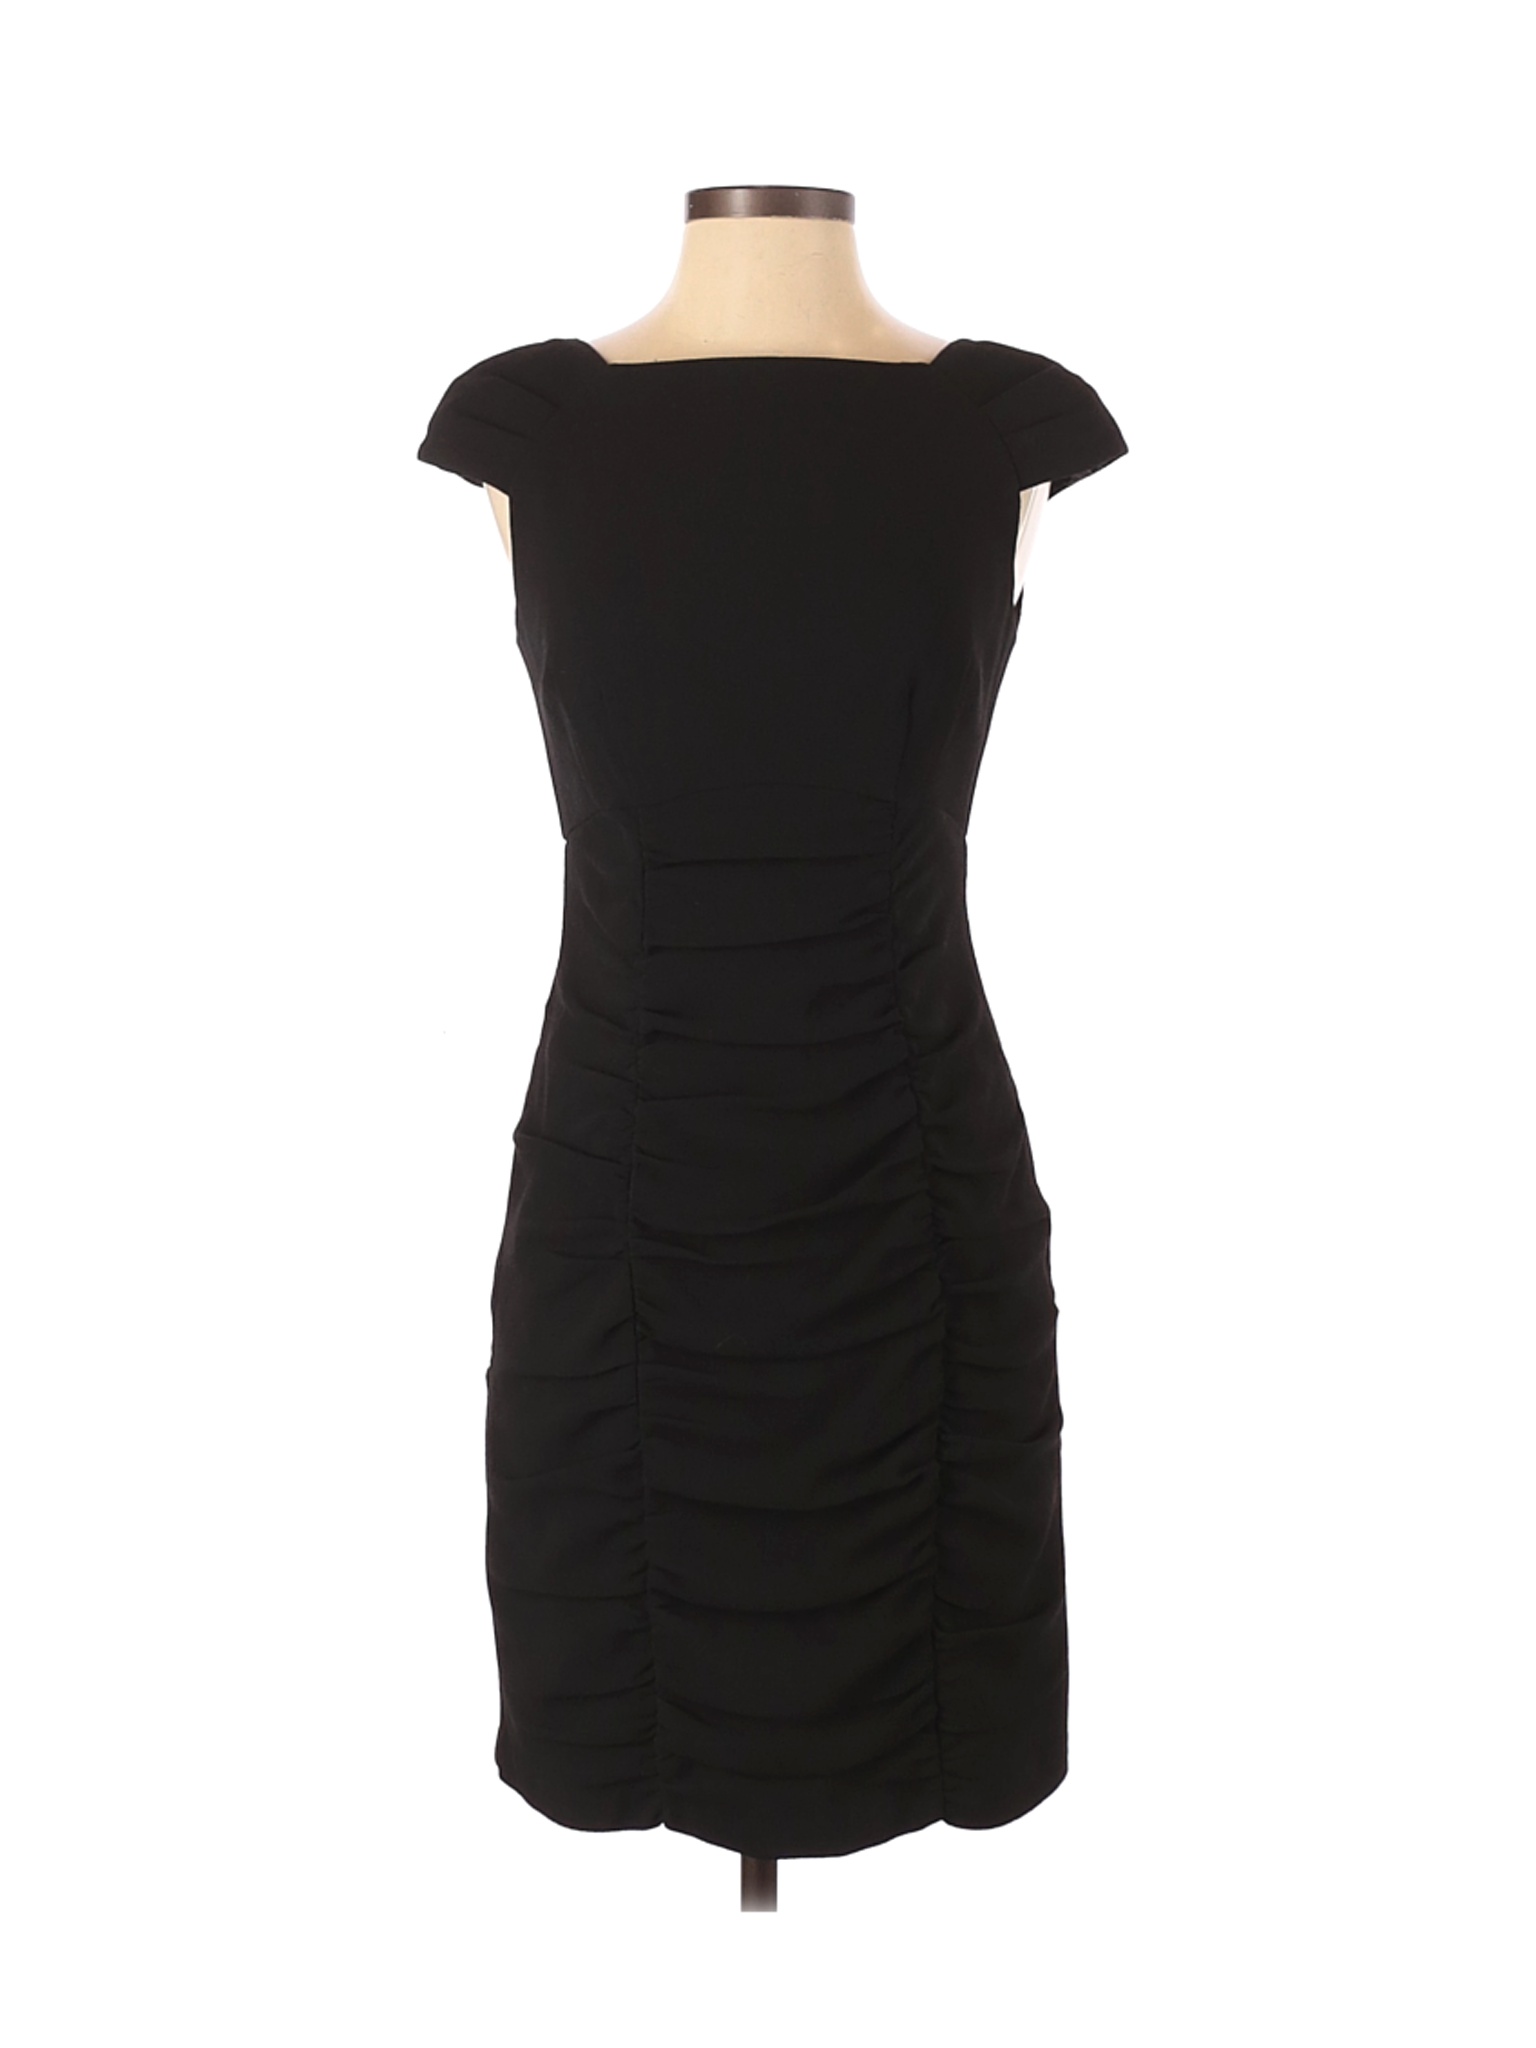 Nanette Lepore Women Black Cocktail Dress 4 | eBay